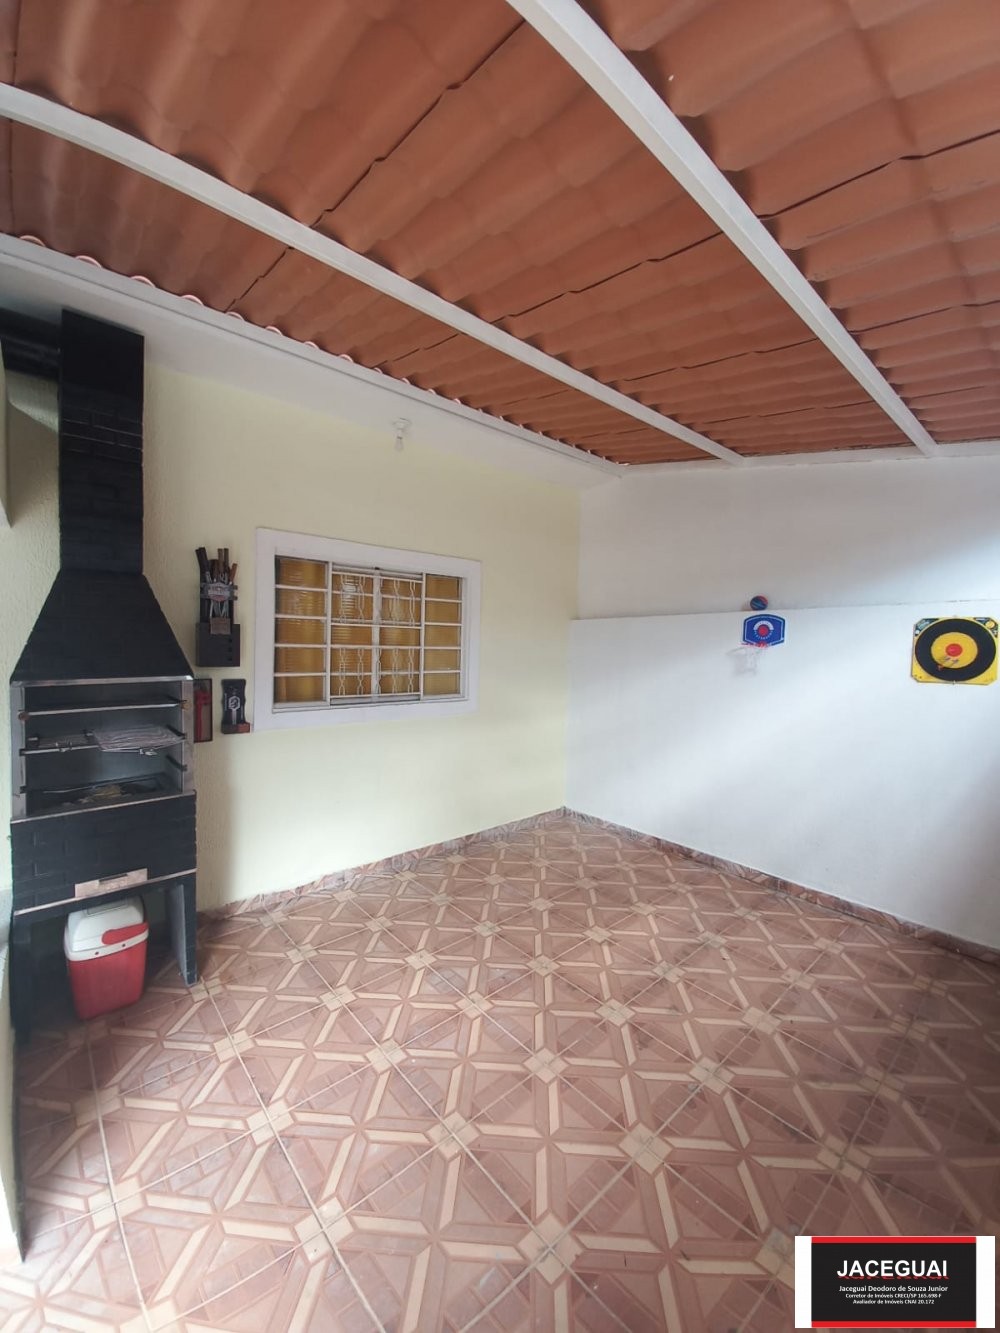 Casa  venda  no Aparecidinha - Sorocaba, SP. Imveis